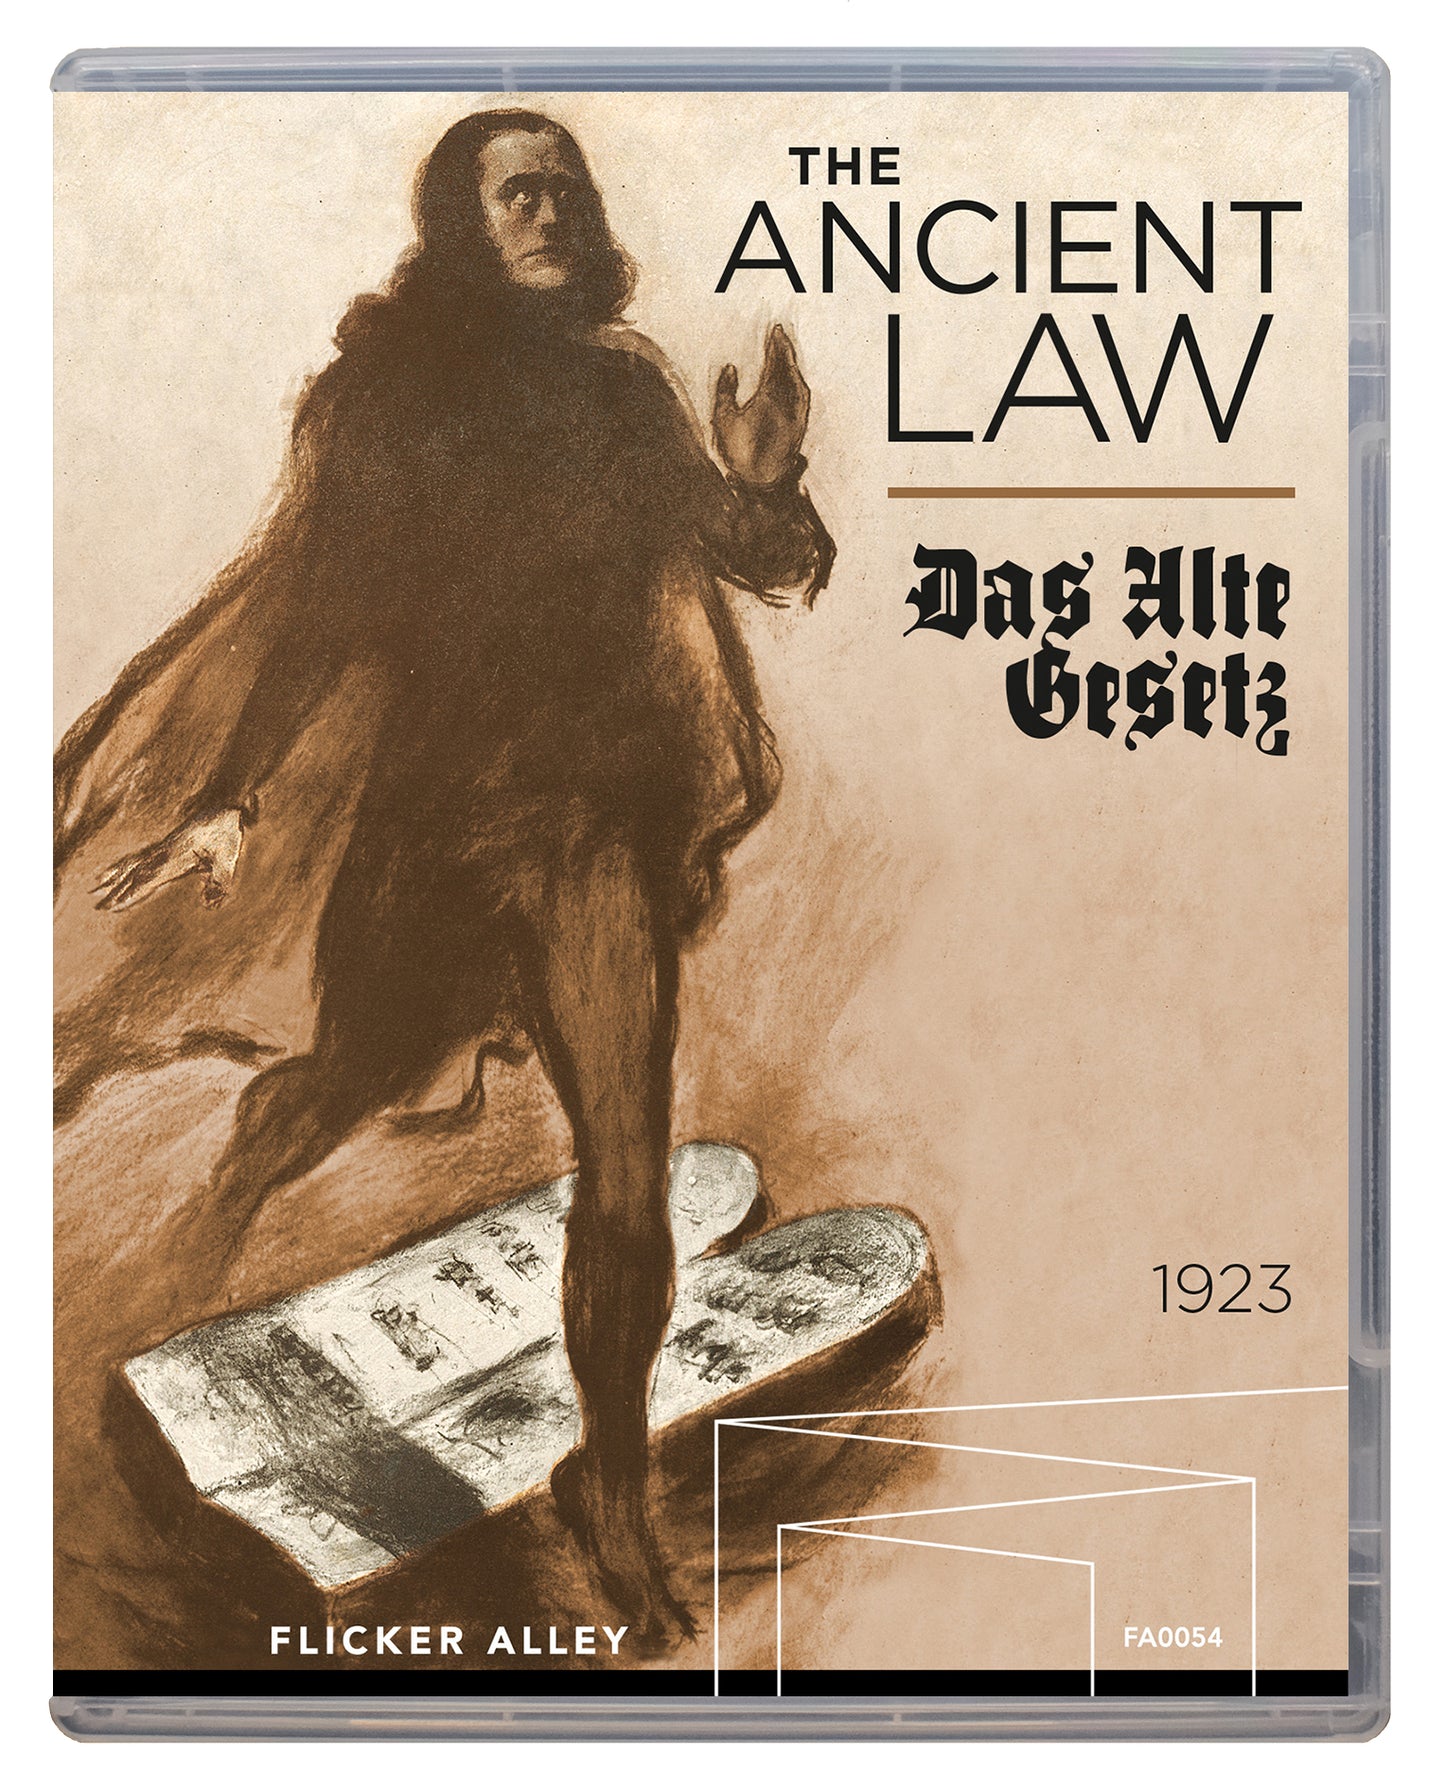 The Ancient Law (Das alte Gesetz)